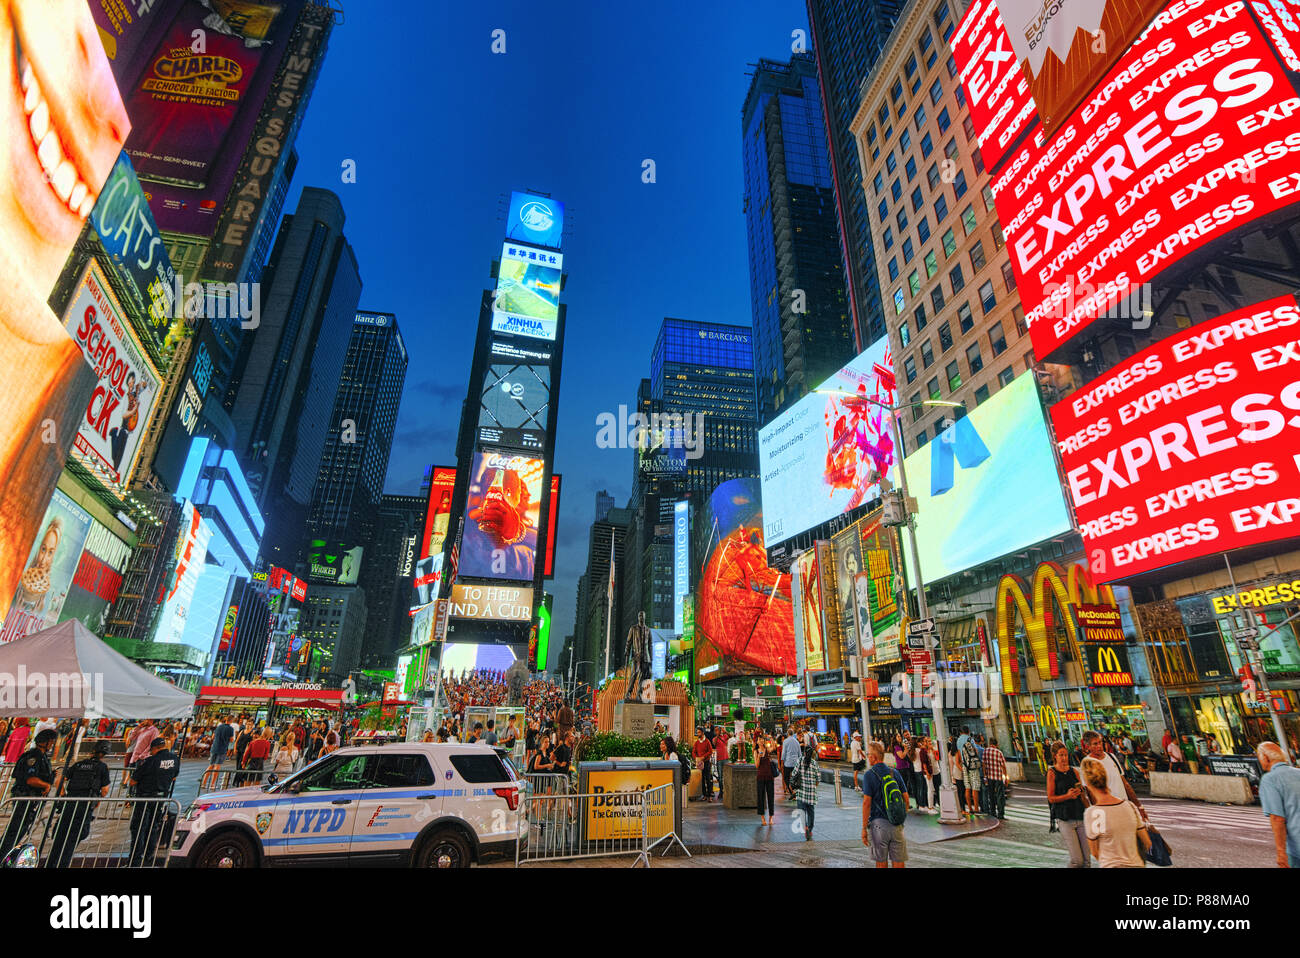 New York, USA- 06 septembre 2017 : Vue de nuit Times Square-central et de la place principale de New York. Rue, voitures, les gens et les touristes. Banque D'Images